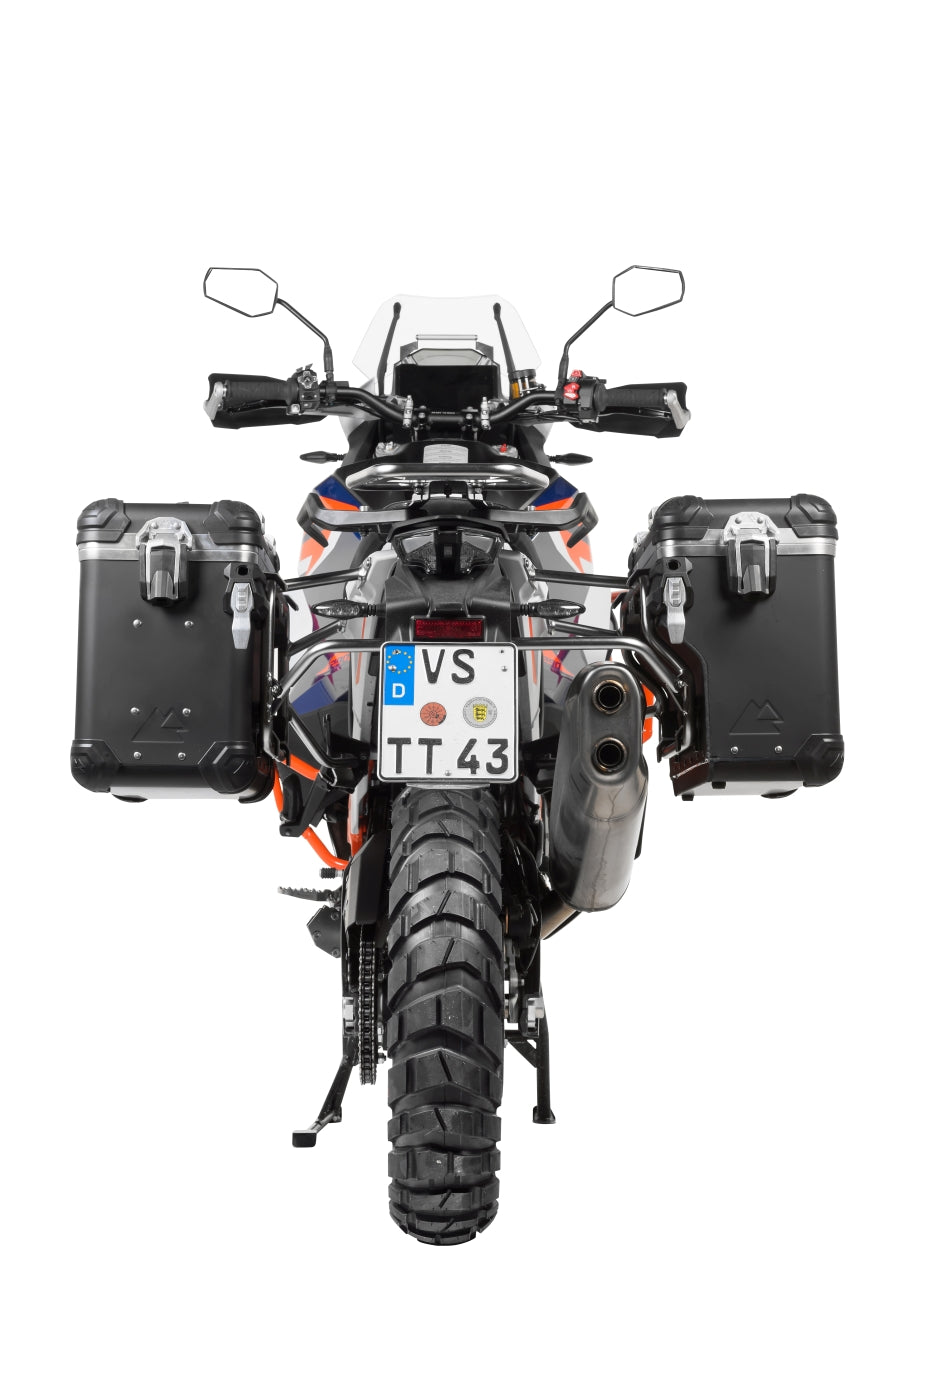 ZEGA Evo X Sondersystem für KTM 1290 Super Adventure S/R ab 2021